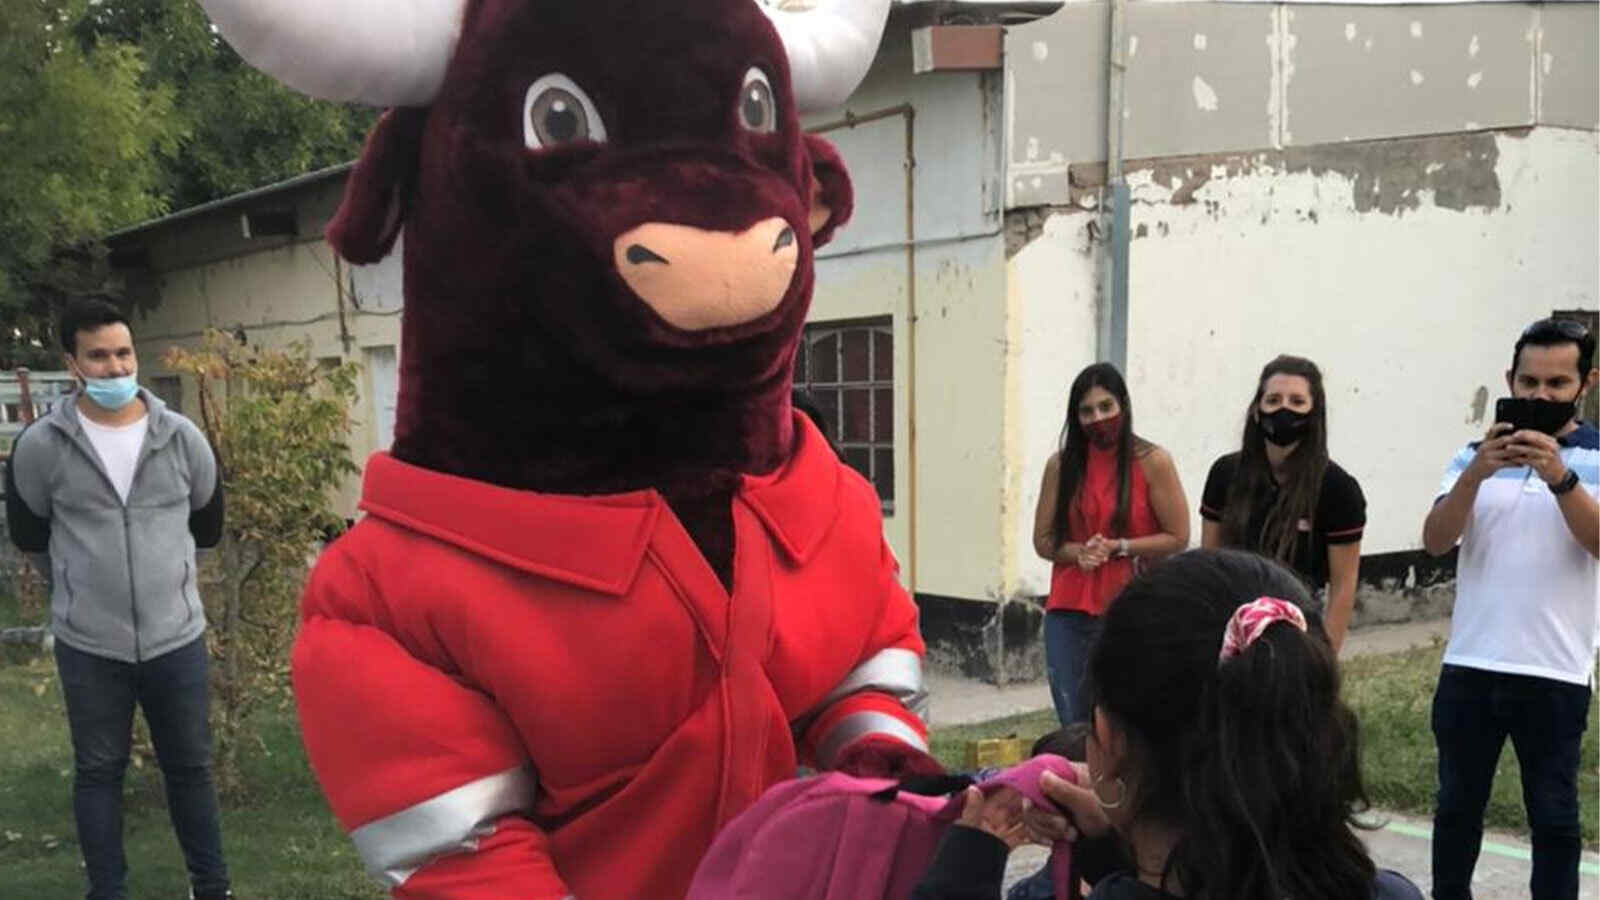 "Halli-bull", the Halliburton Argentina mascot, distributed backpacks to students